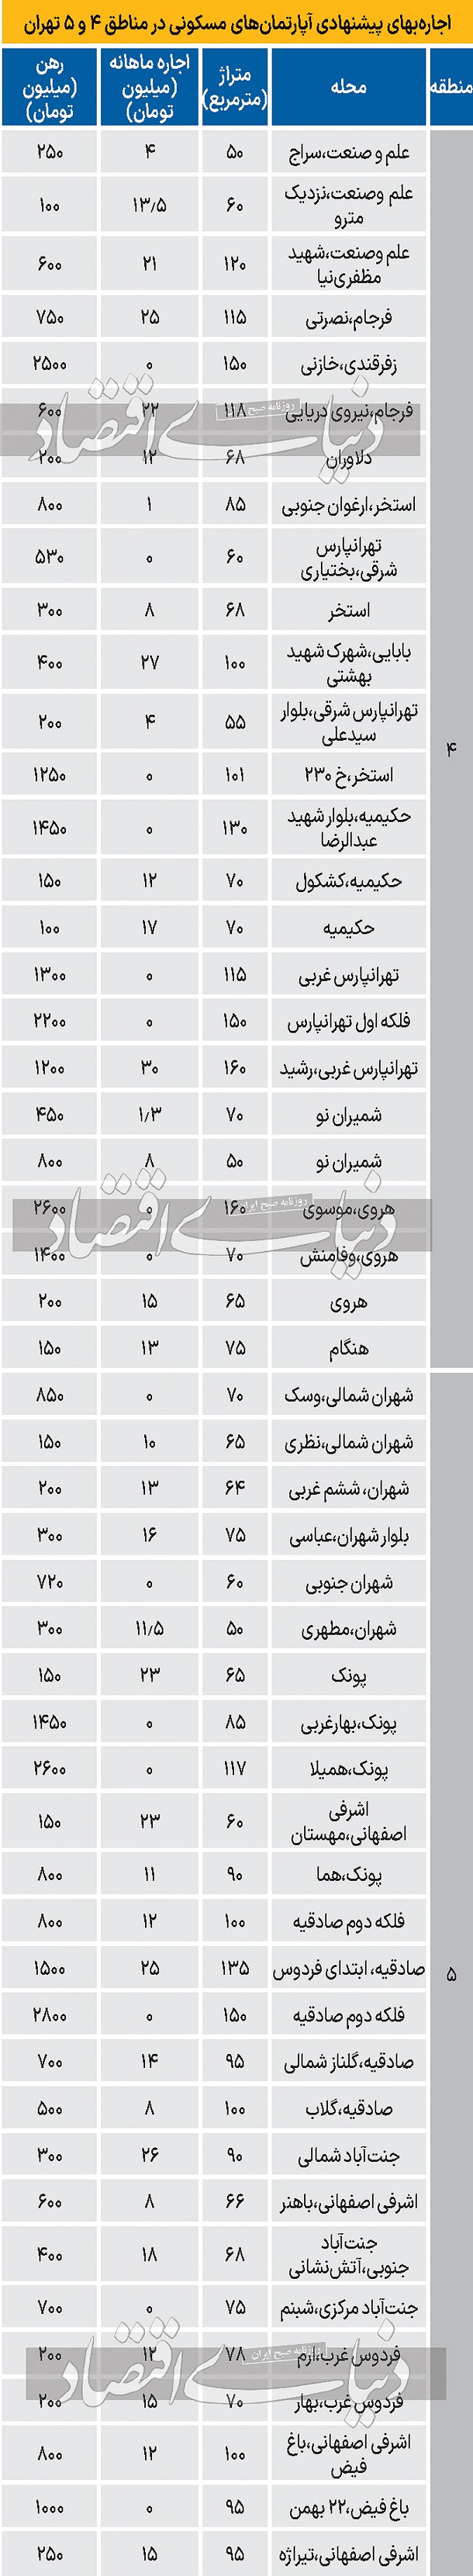 نرخ اجاره آپارتمان در مناطق 4 و 5 تهران